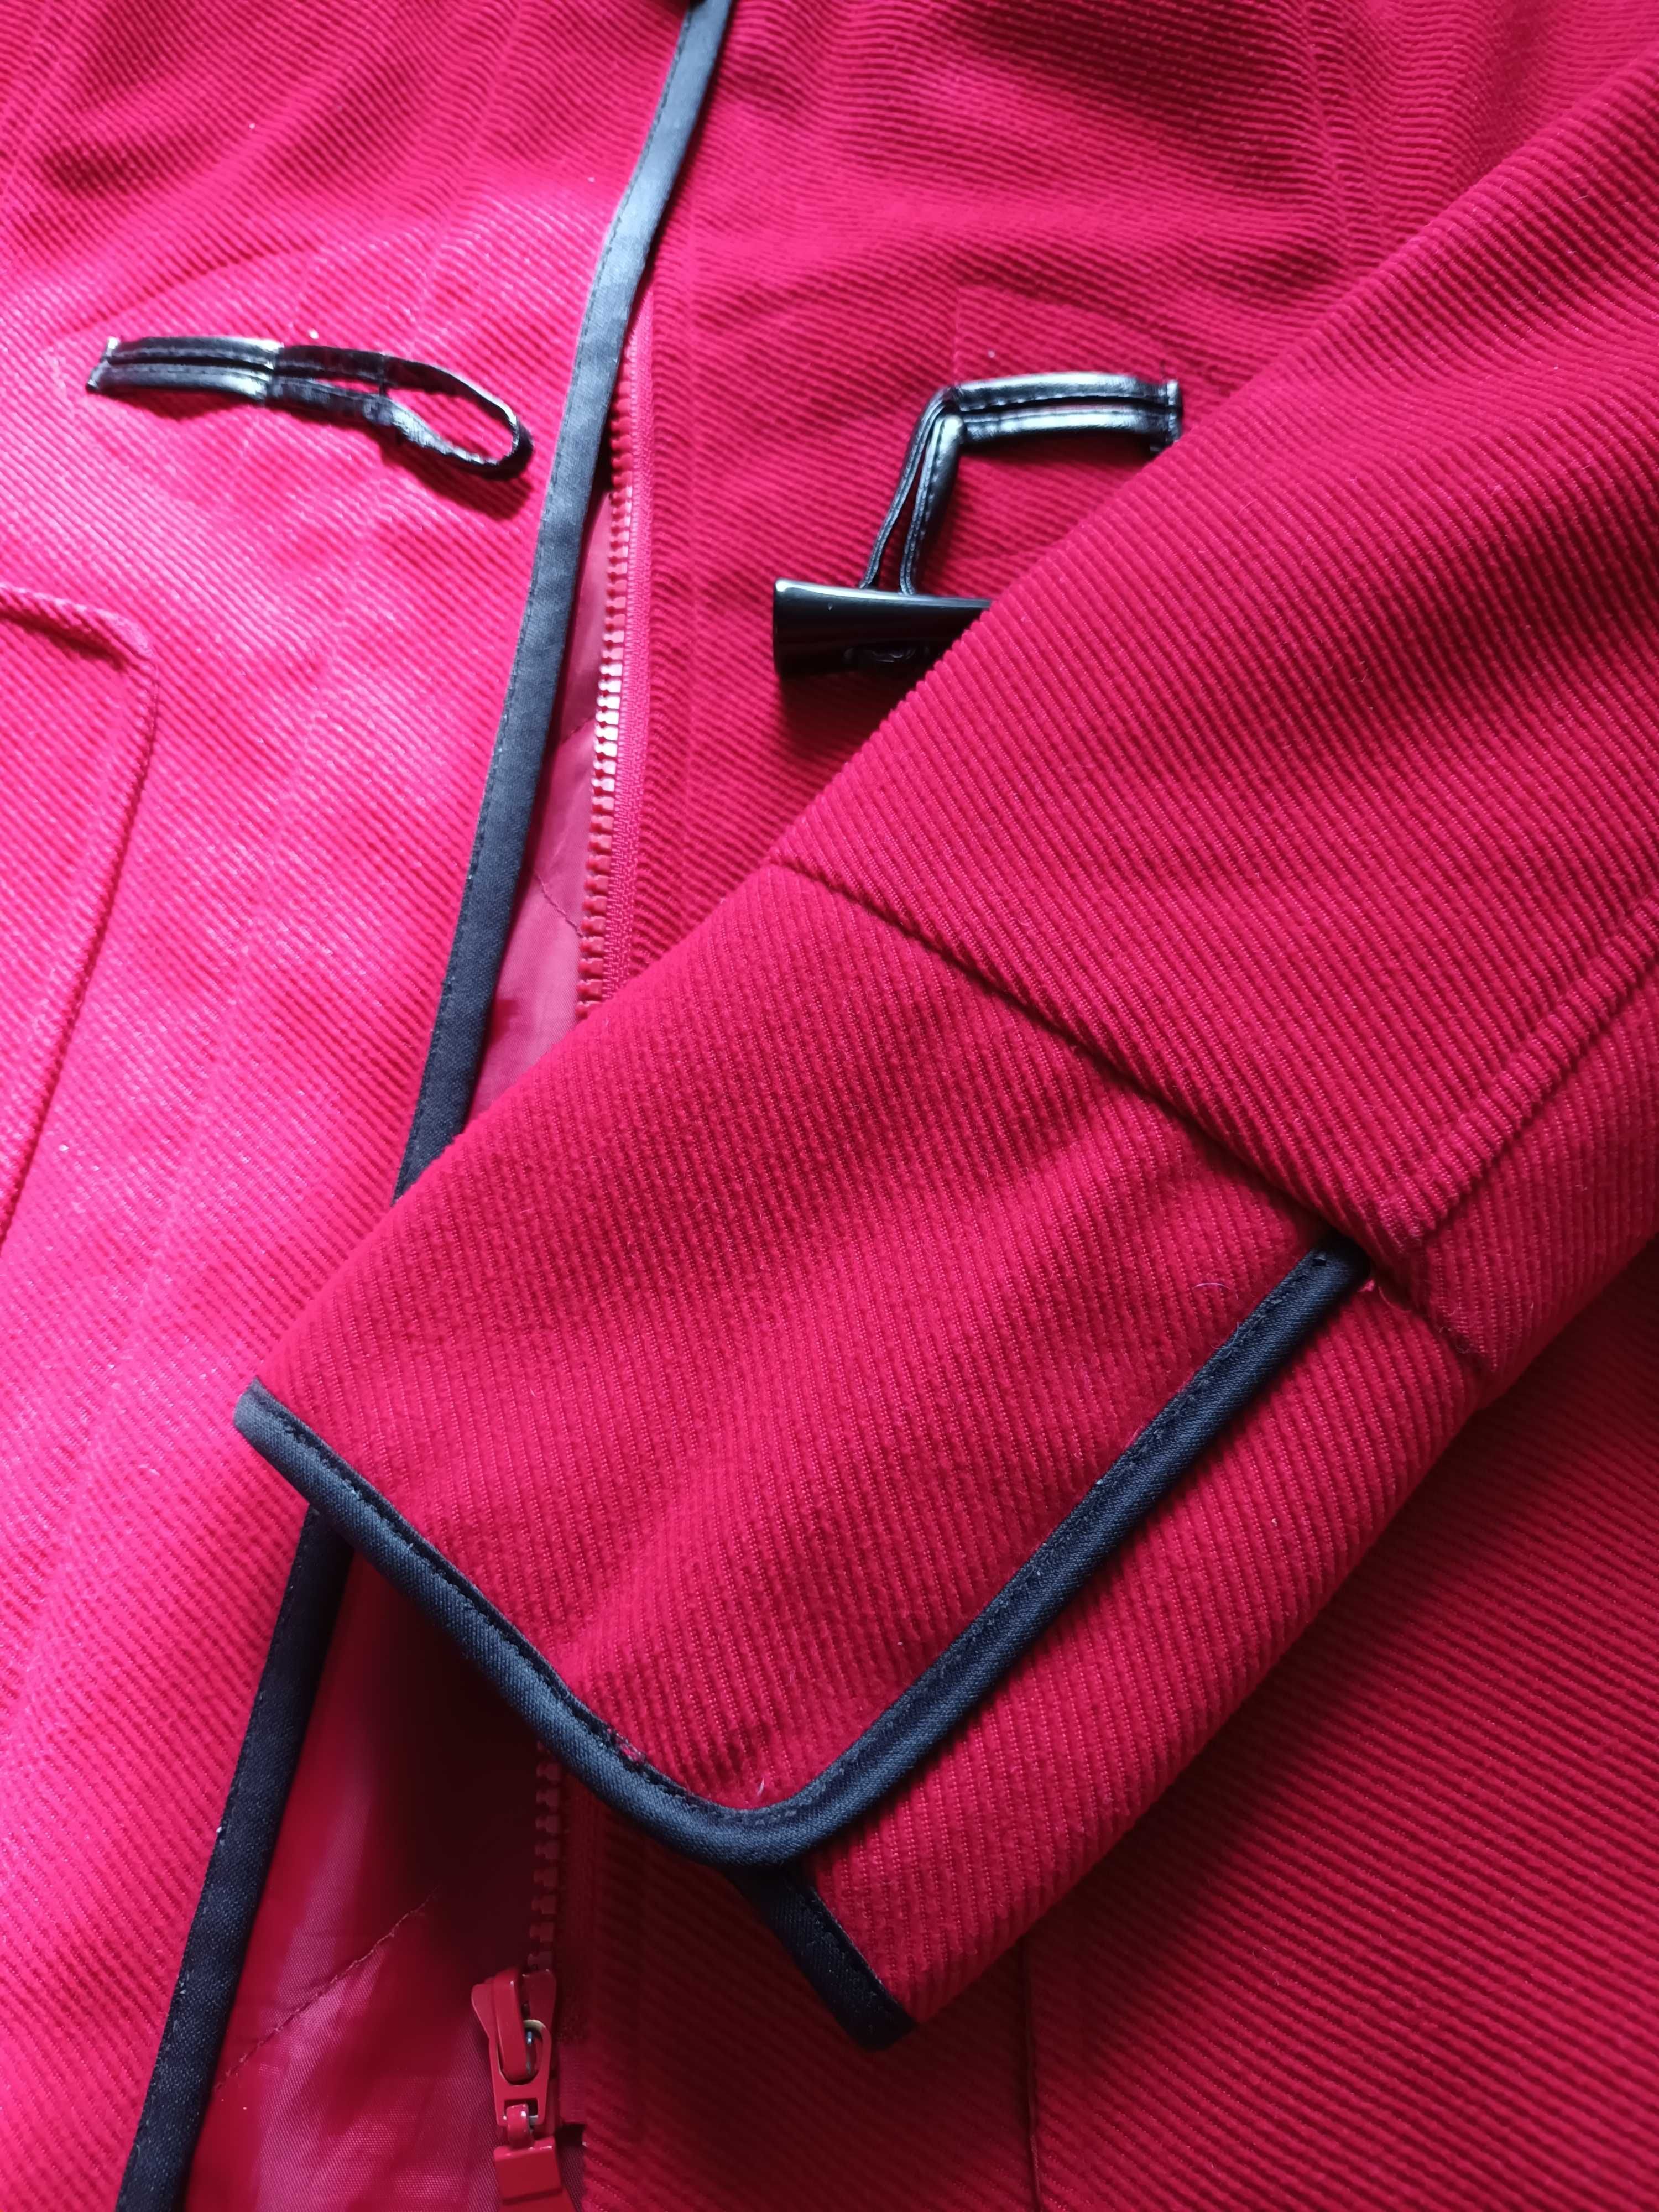 Kurtka, krótki płaszcz - czerwona Orsay r. 38 z kapturem z futerkiem